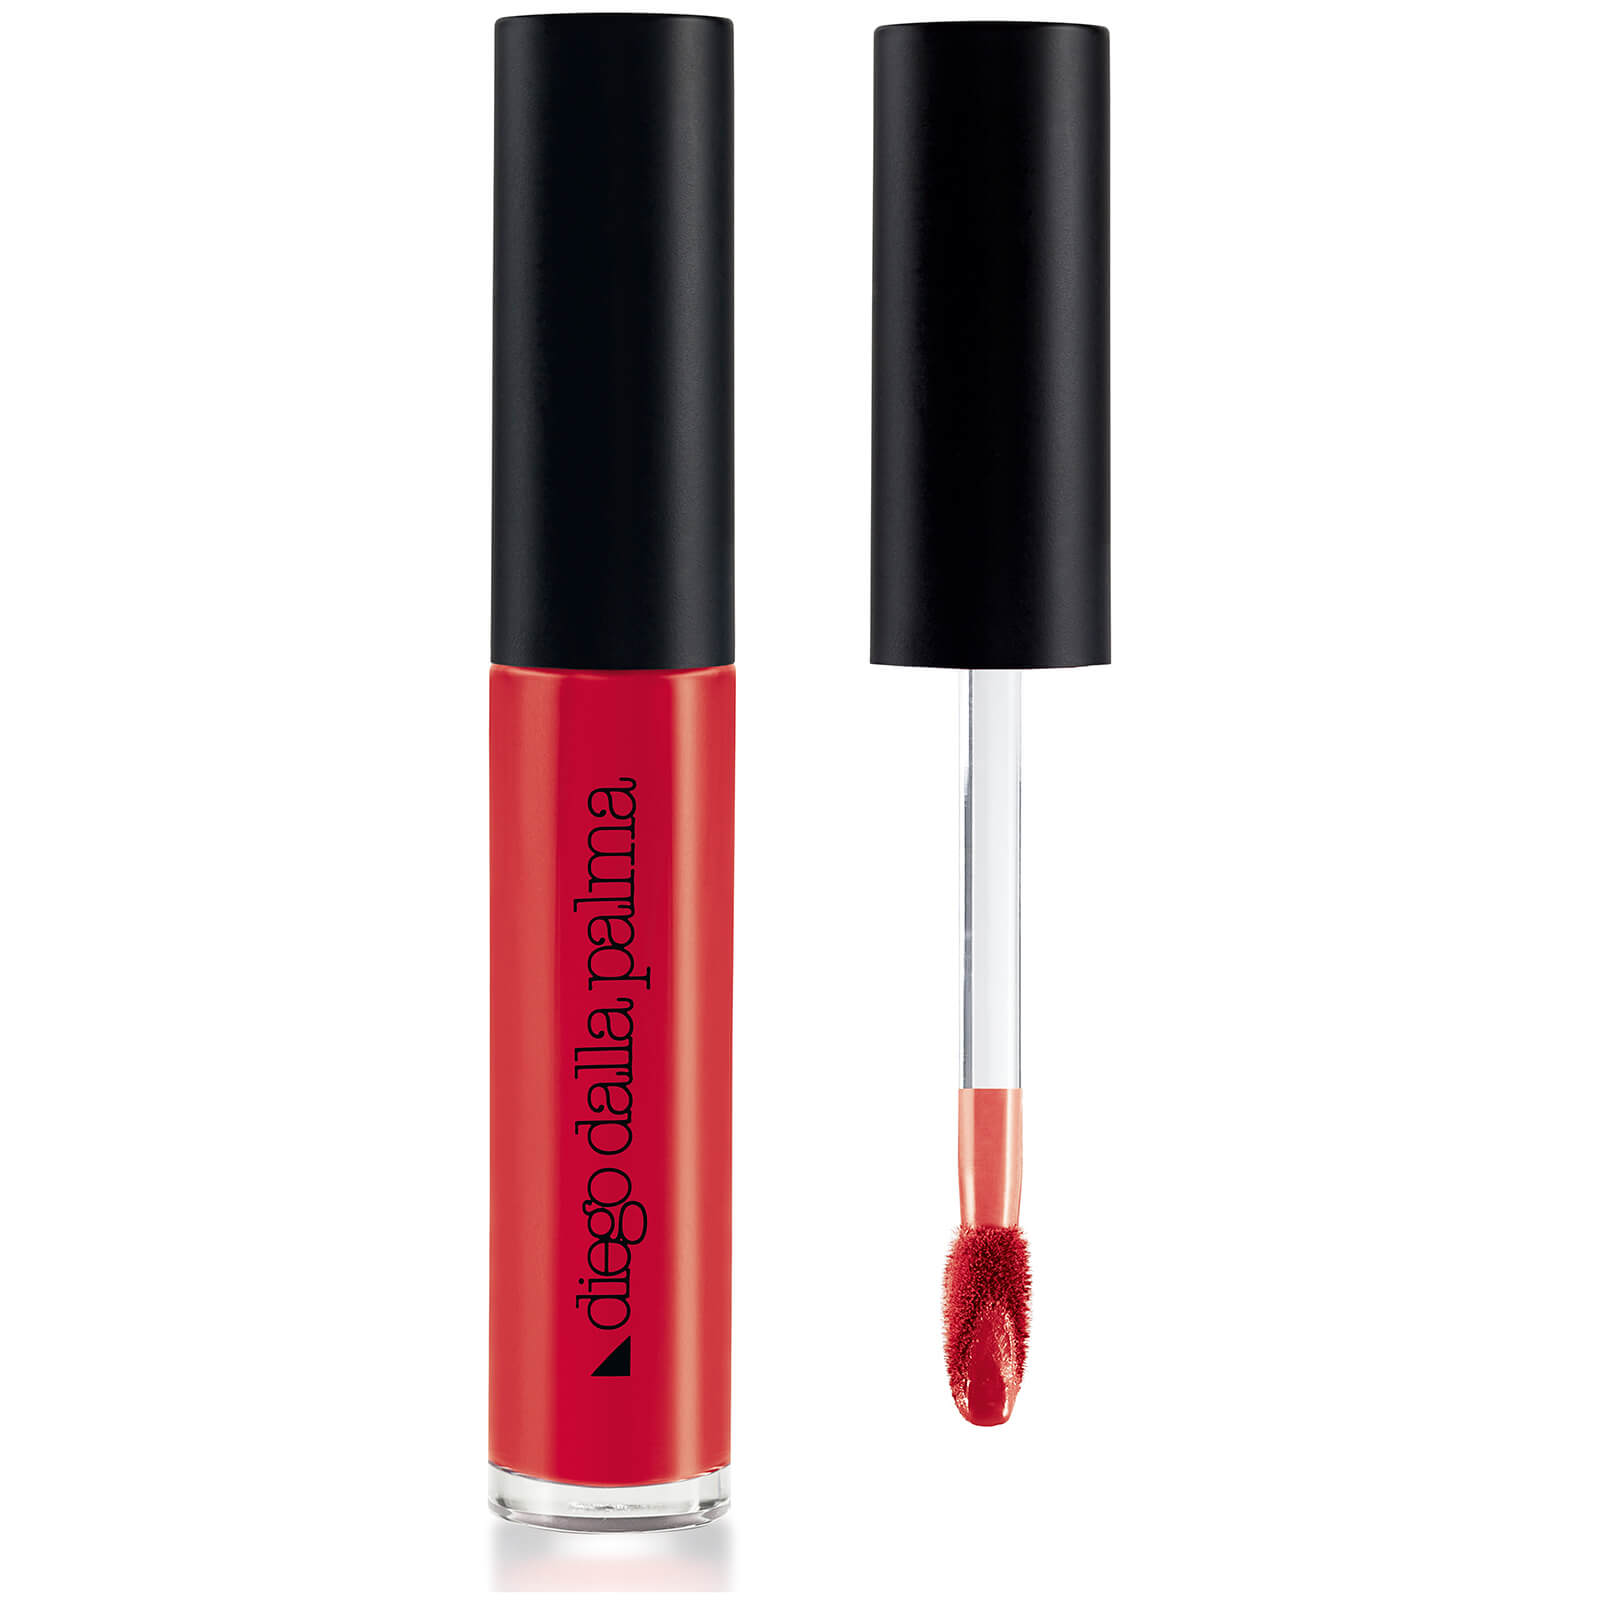 Diego Dalla Palma Geisha Matt Liquid Lipstick 6.5ml (Various Shades) - 2 Bright Red